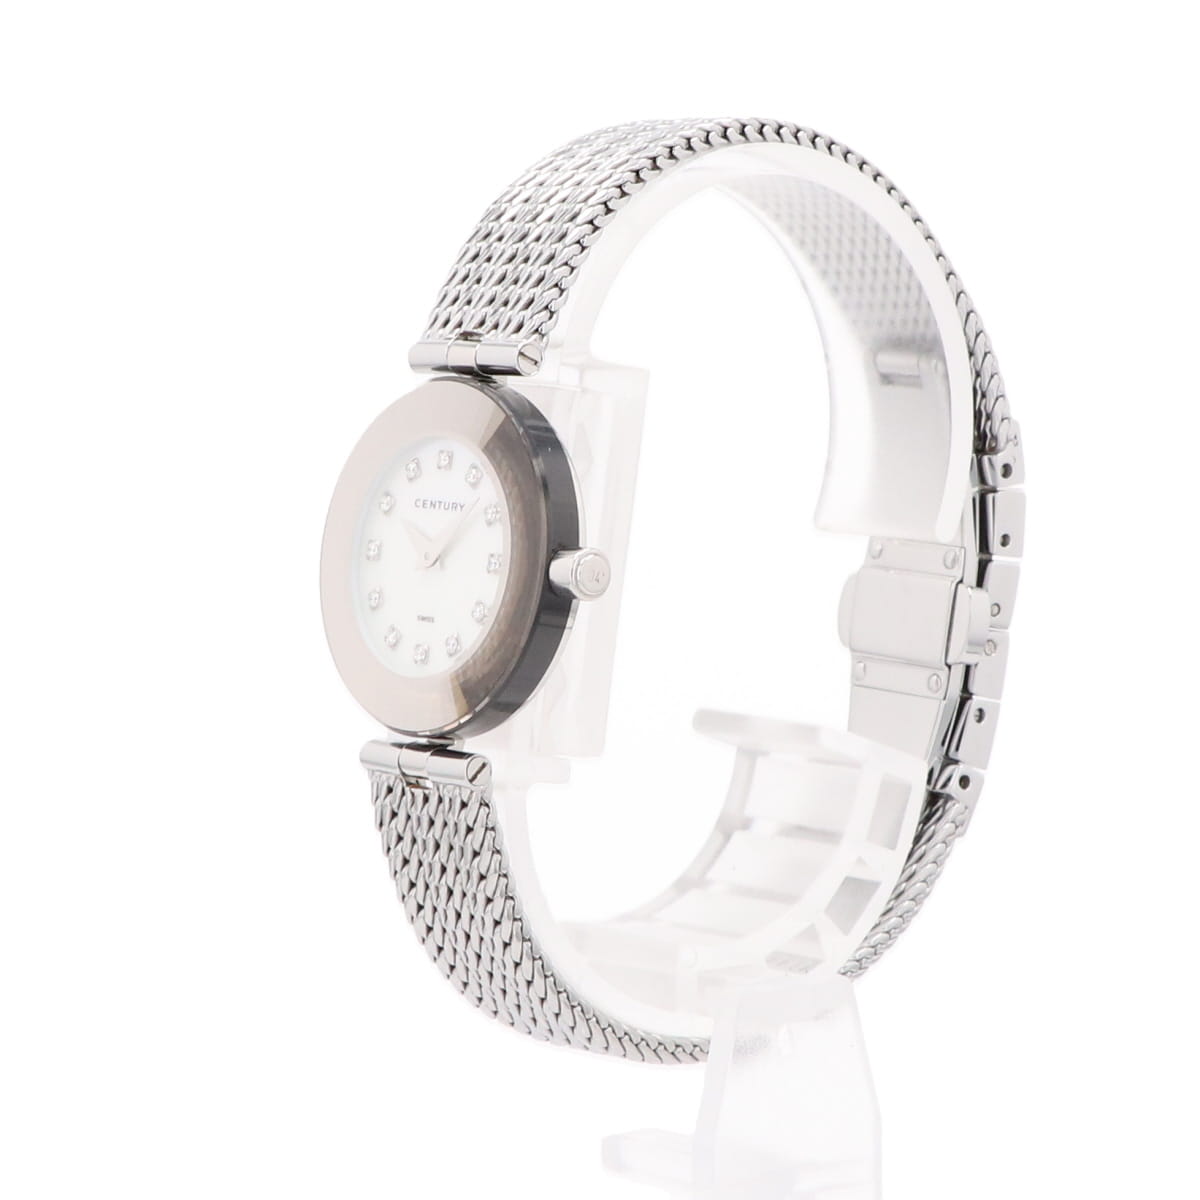 センチュリー タイムジェム 12Pダイヤ シェル 腕時計 SS ダイヤモンド クォーツ ホワイト レディース 【中古】 , ラッピング可